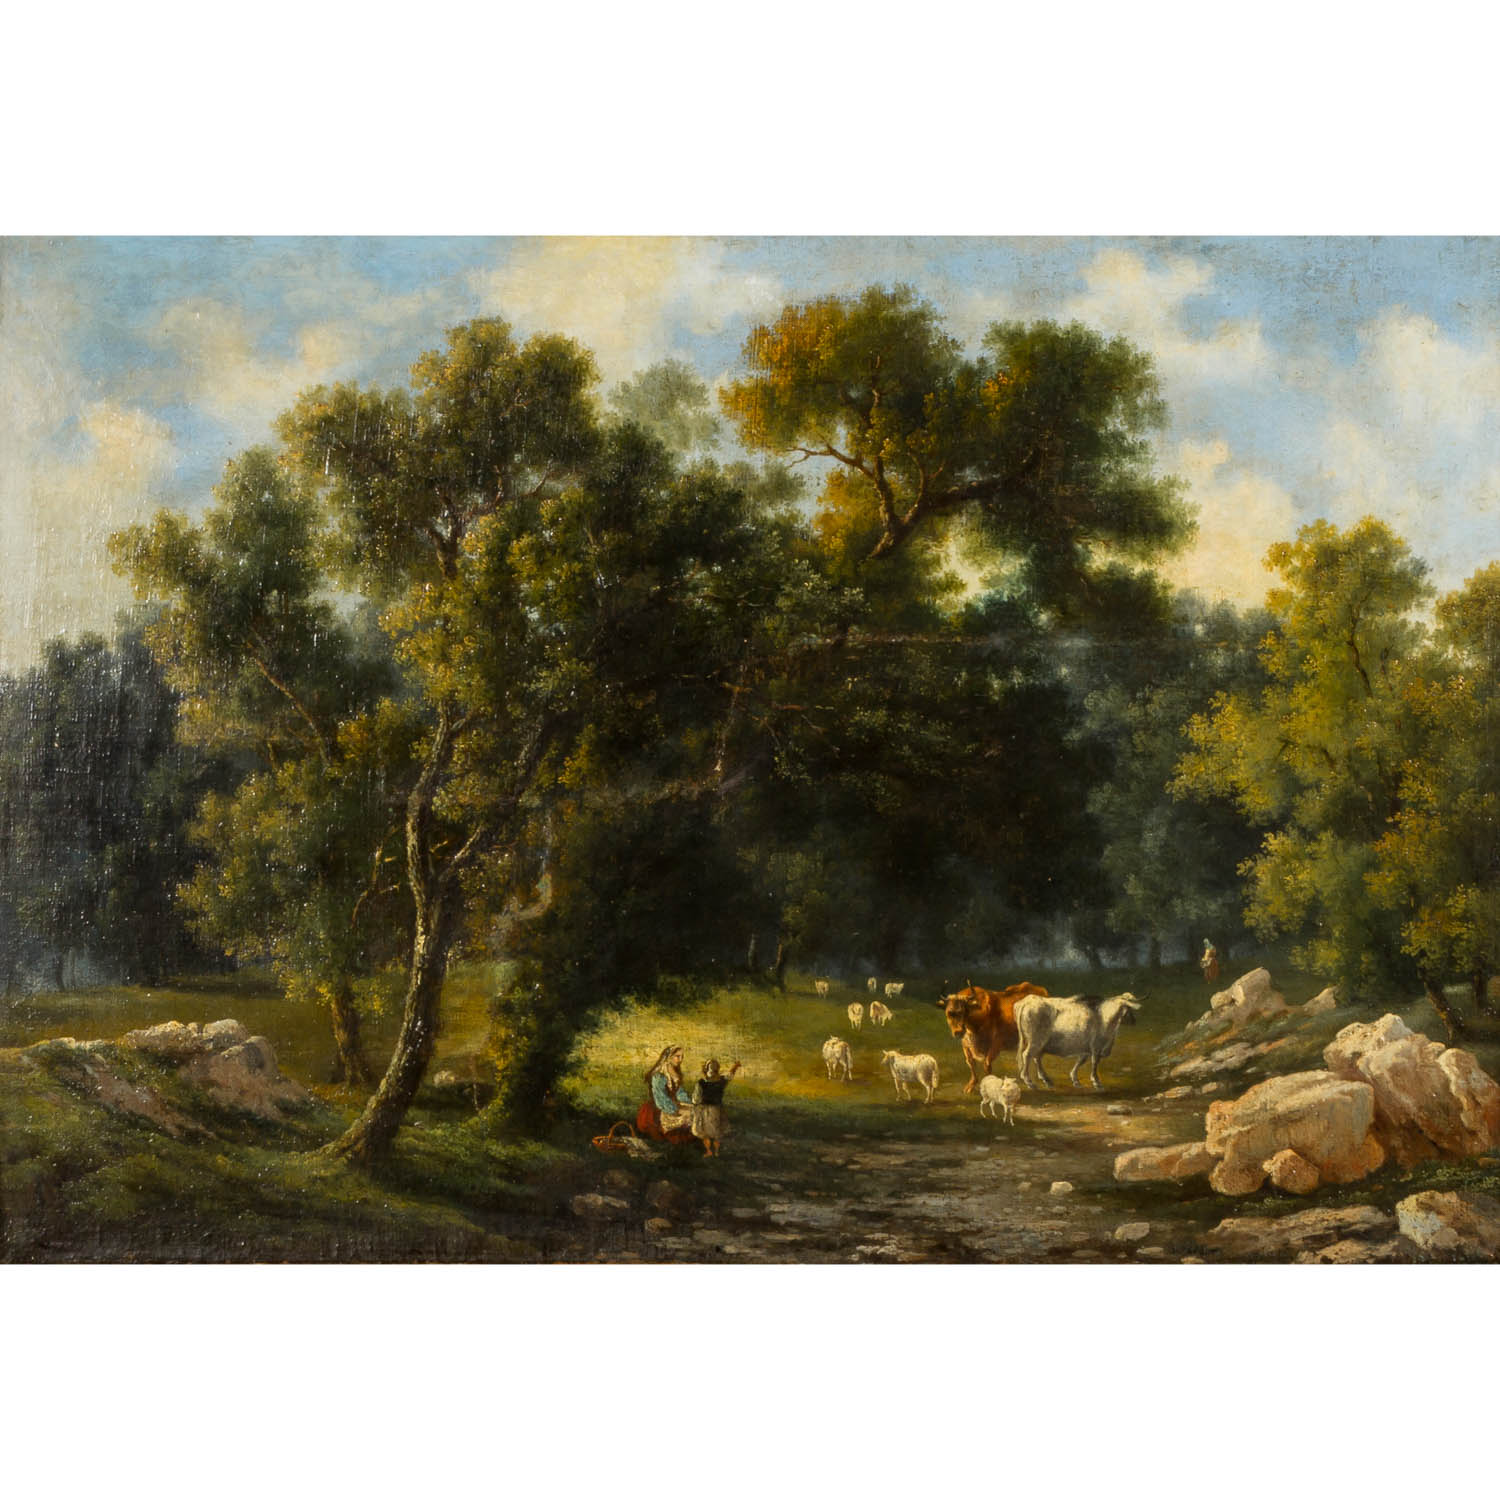 VAN DER AA, DIRK (ATRIBUTTIERT), 1731-1809, "Hirtenszene"